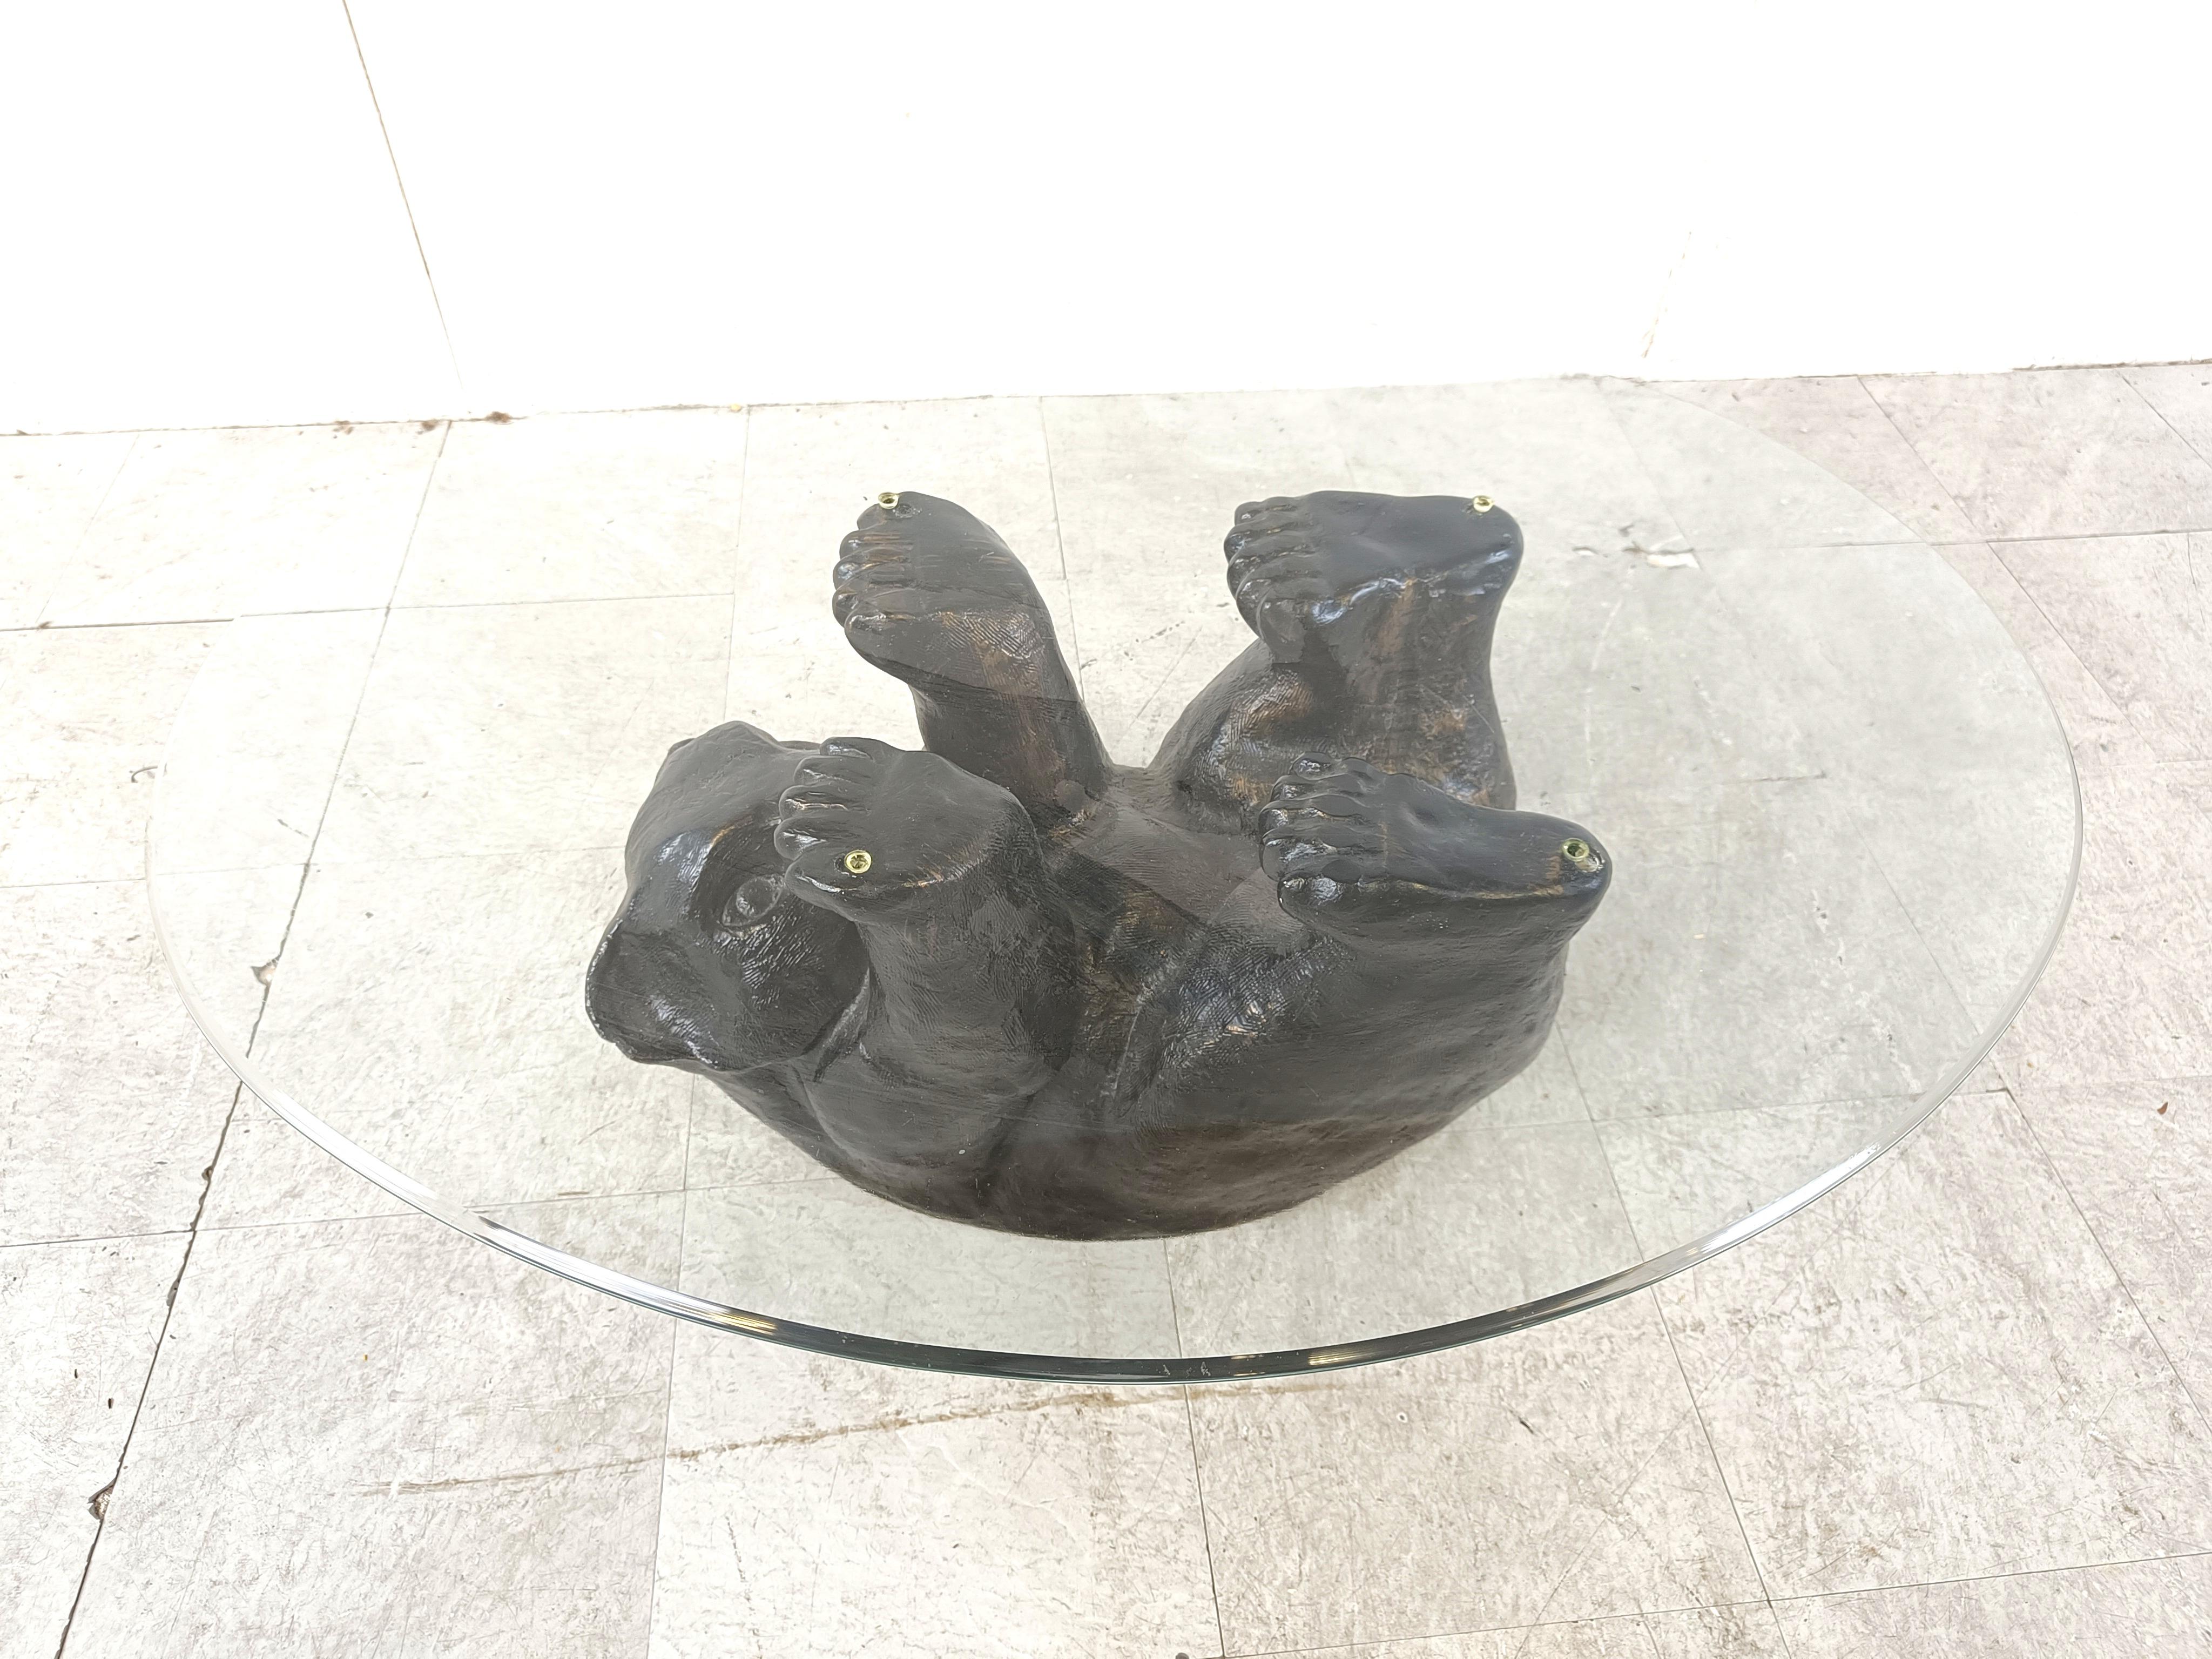 Table basse sculpturale en forme d'ours noir.

Cette table unique est très esthétique et plutôt mignonne.

Années 1970 - Belgique

Bon état

Dimensions de la base :
Hauteur : 40cm
Largeur : 90 cm
Profondeur : 70cm

Réf. : 385192